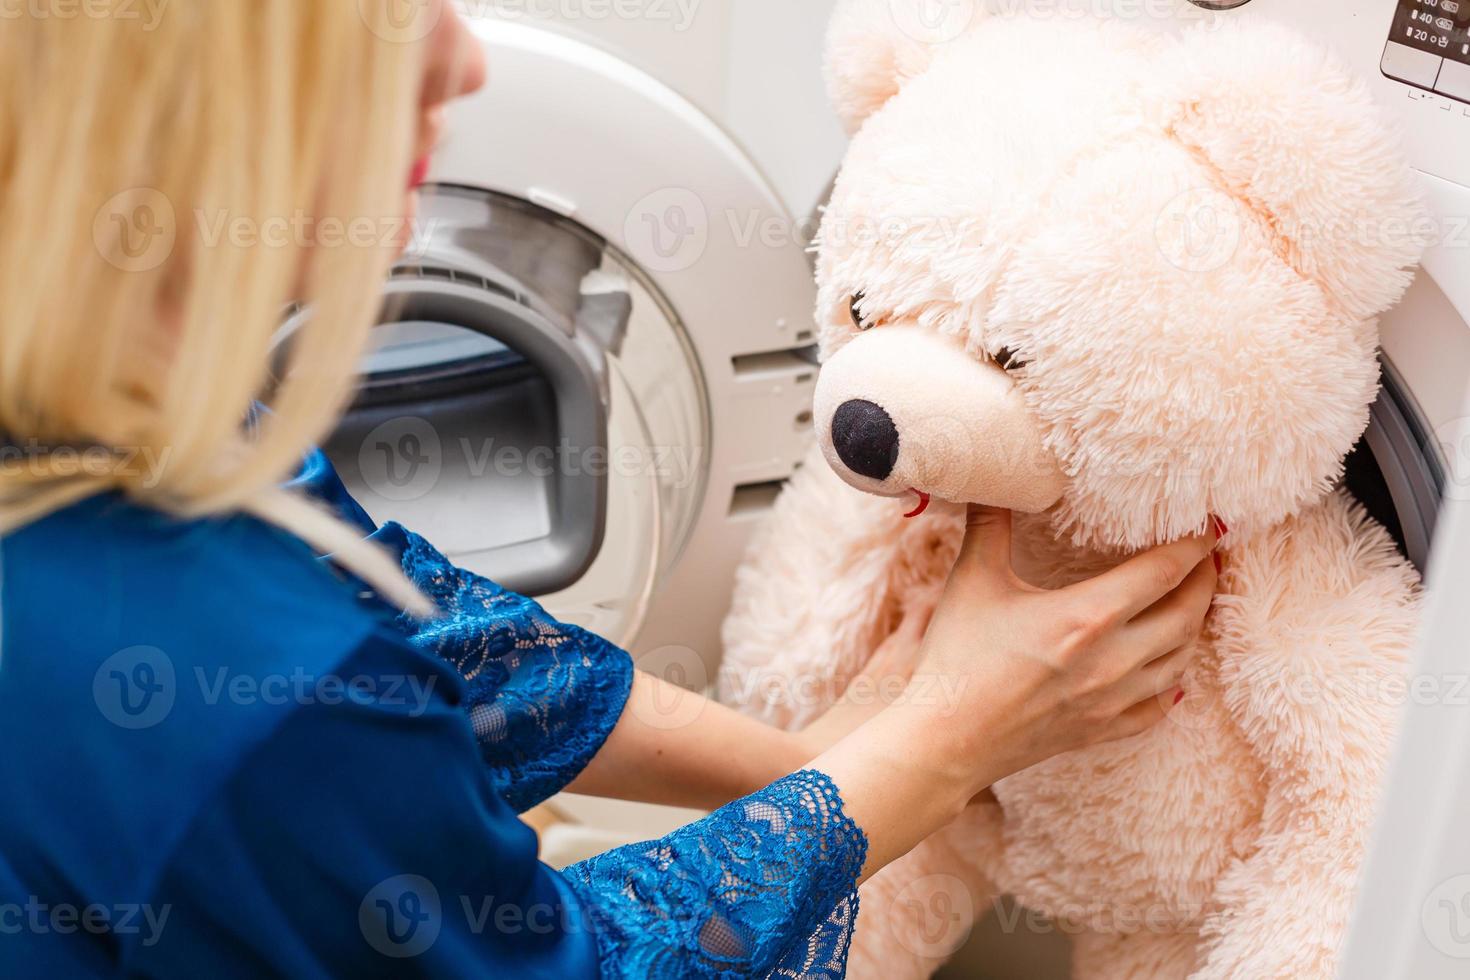 femme chargeant un jouet moelleux dans la machine à laver photo